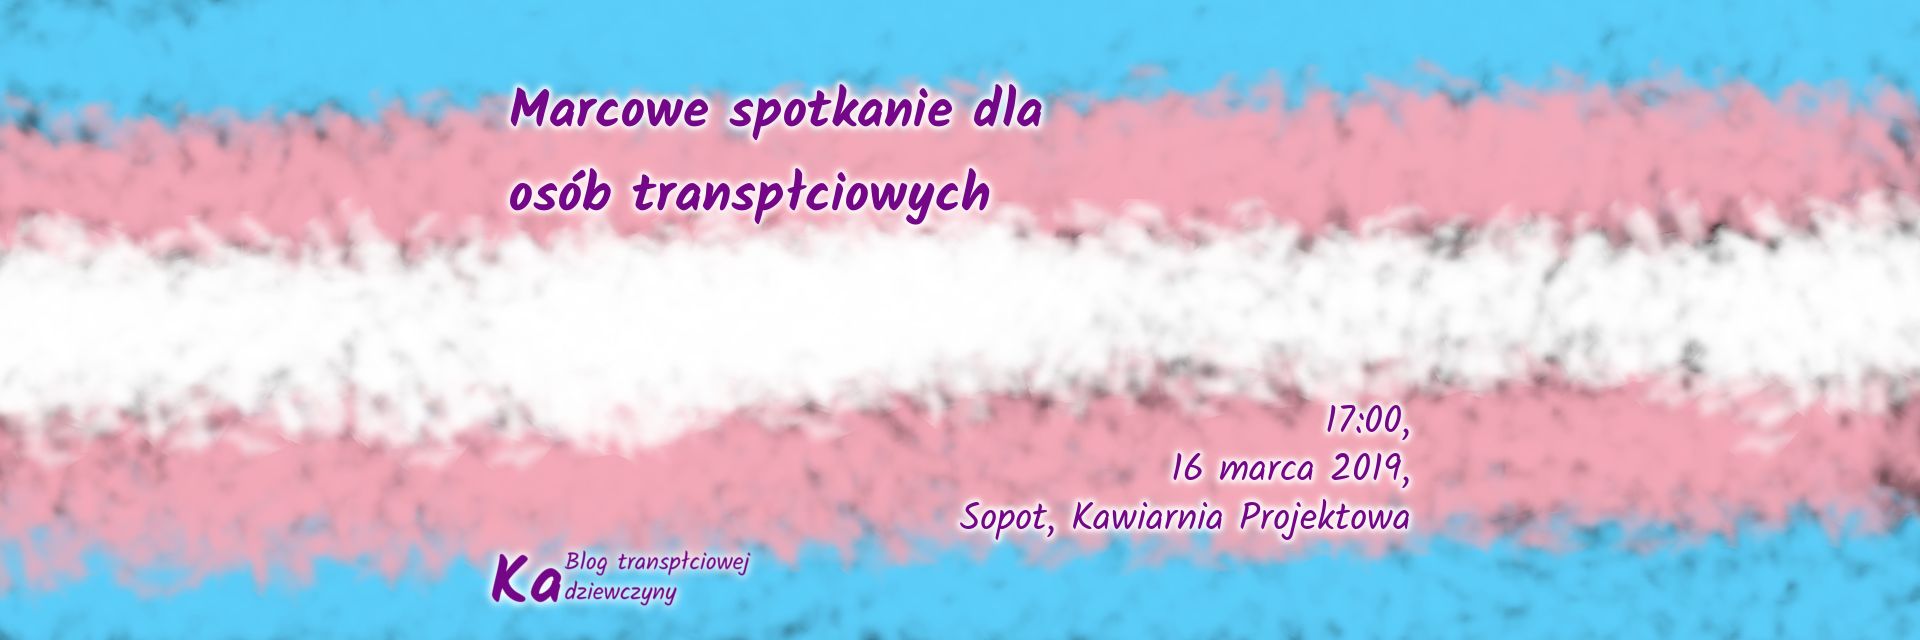 Marcowe spotkanie dla osób transpłciowych